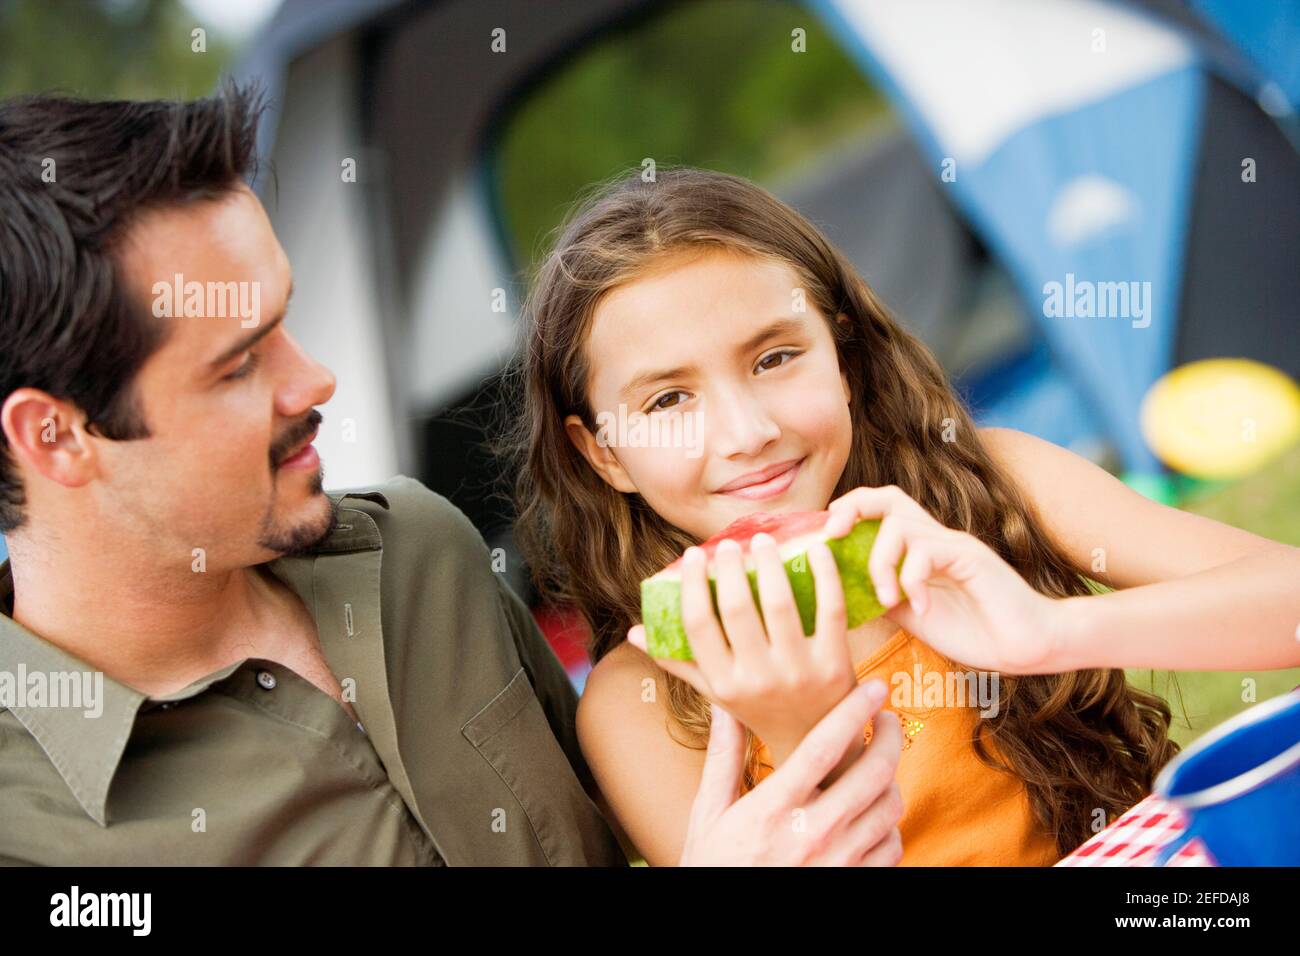 Ritratto di una ragazza che tiene un cocomero con il padre guardandola Foto Stock